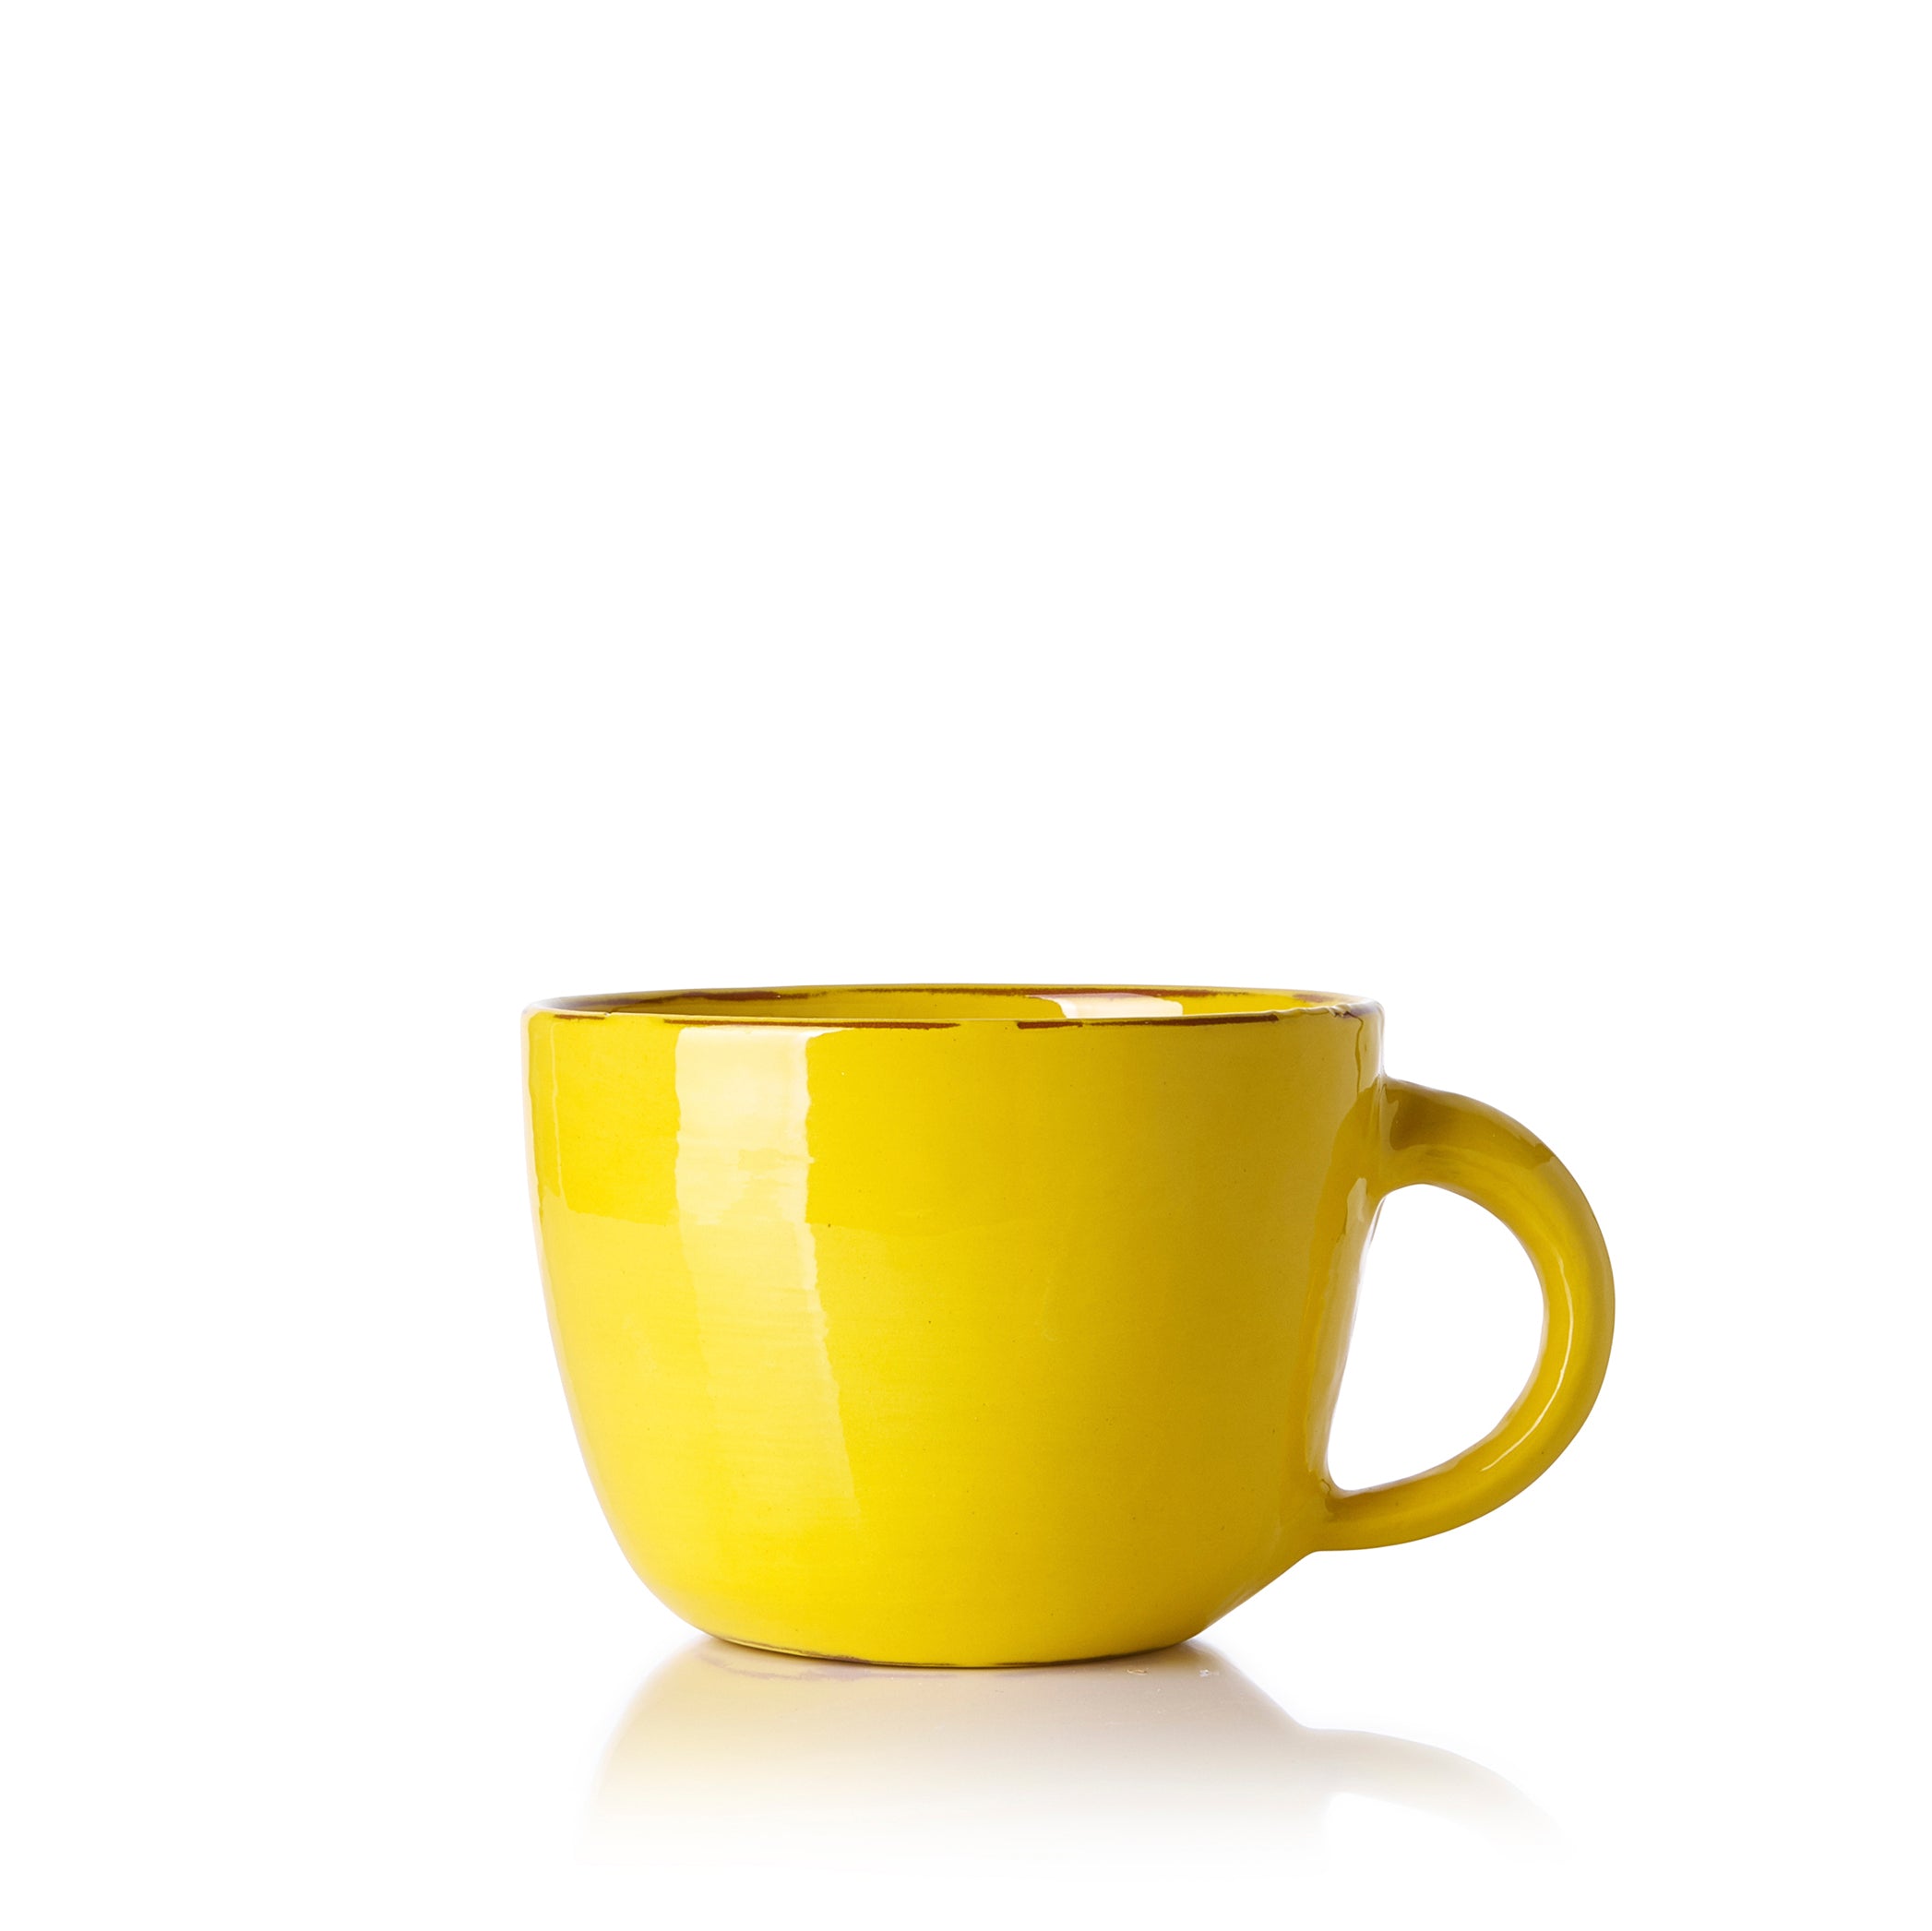 Hot Chocolate Mug in Yellow